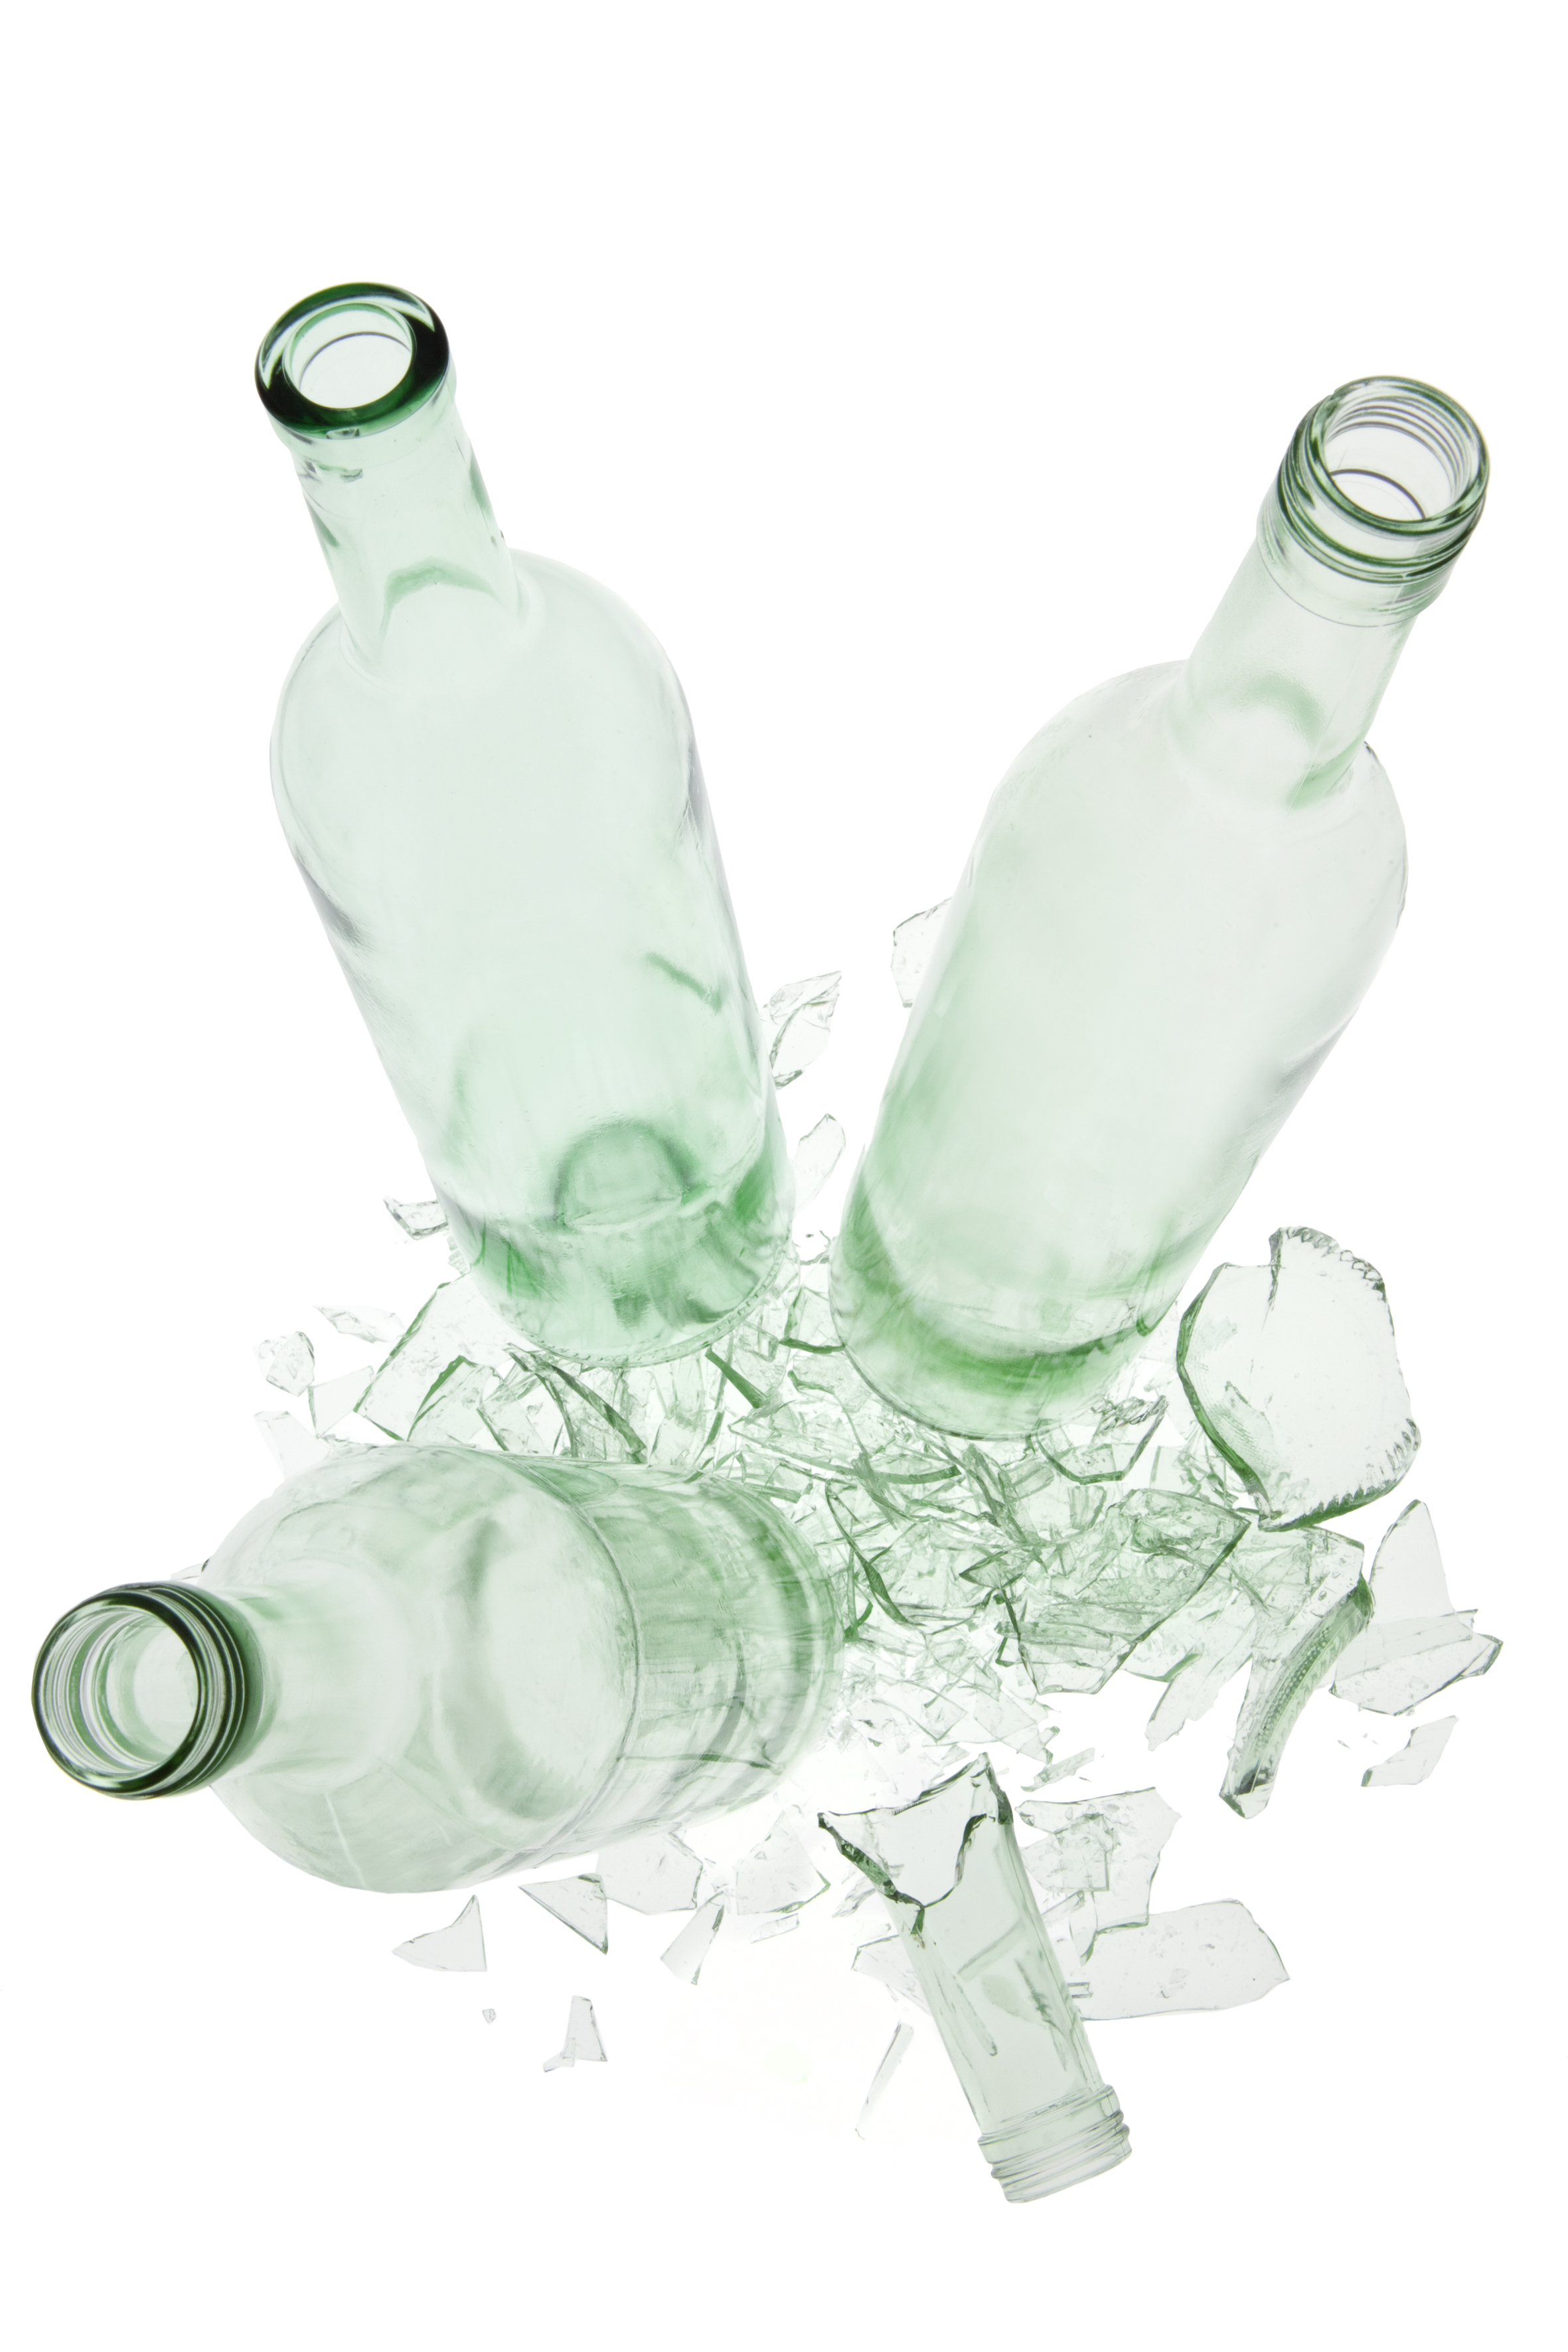 Drei hellgrüne leere Glasflaschen stehen auf den Scherben einer vierten hellgrünen Glasflasche.